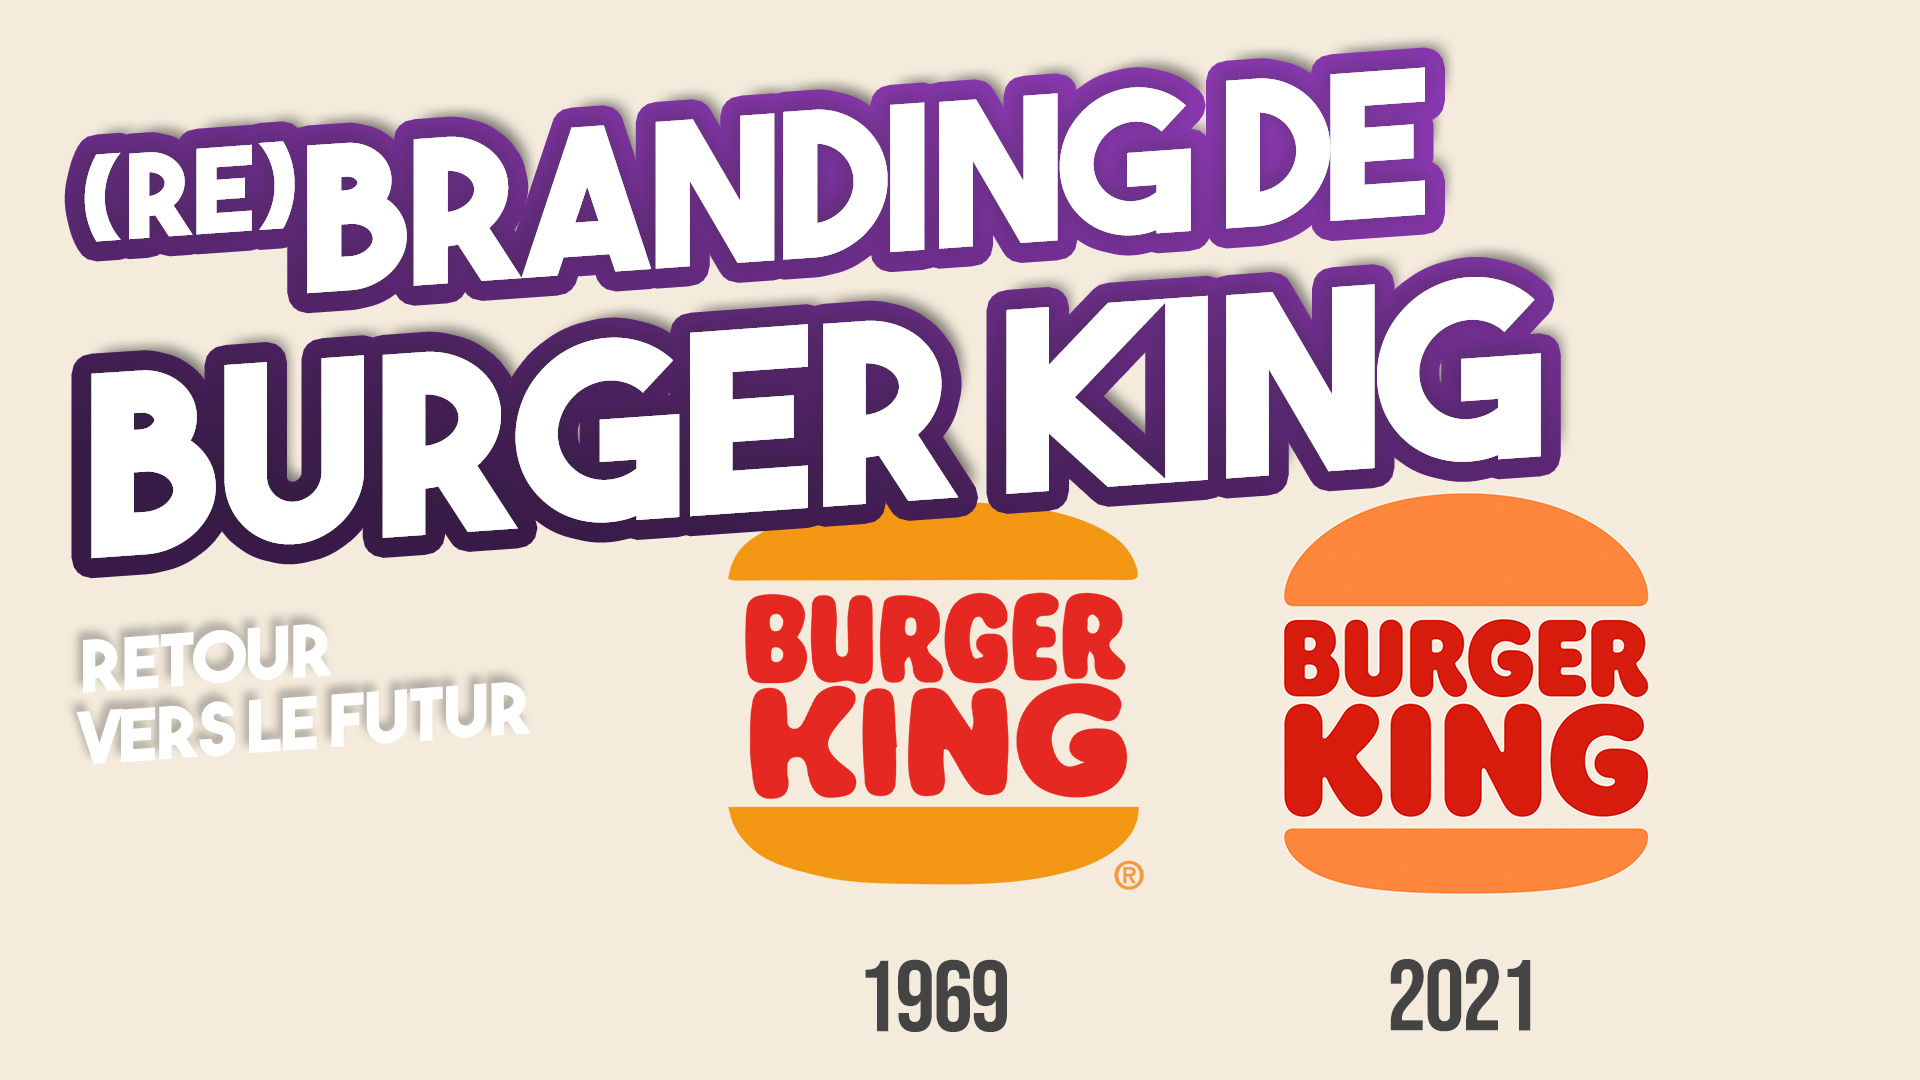 BRANDING : BURGER KING réinvente son passé pour inspirer son futur – Image de marque 2021